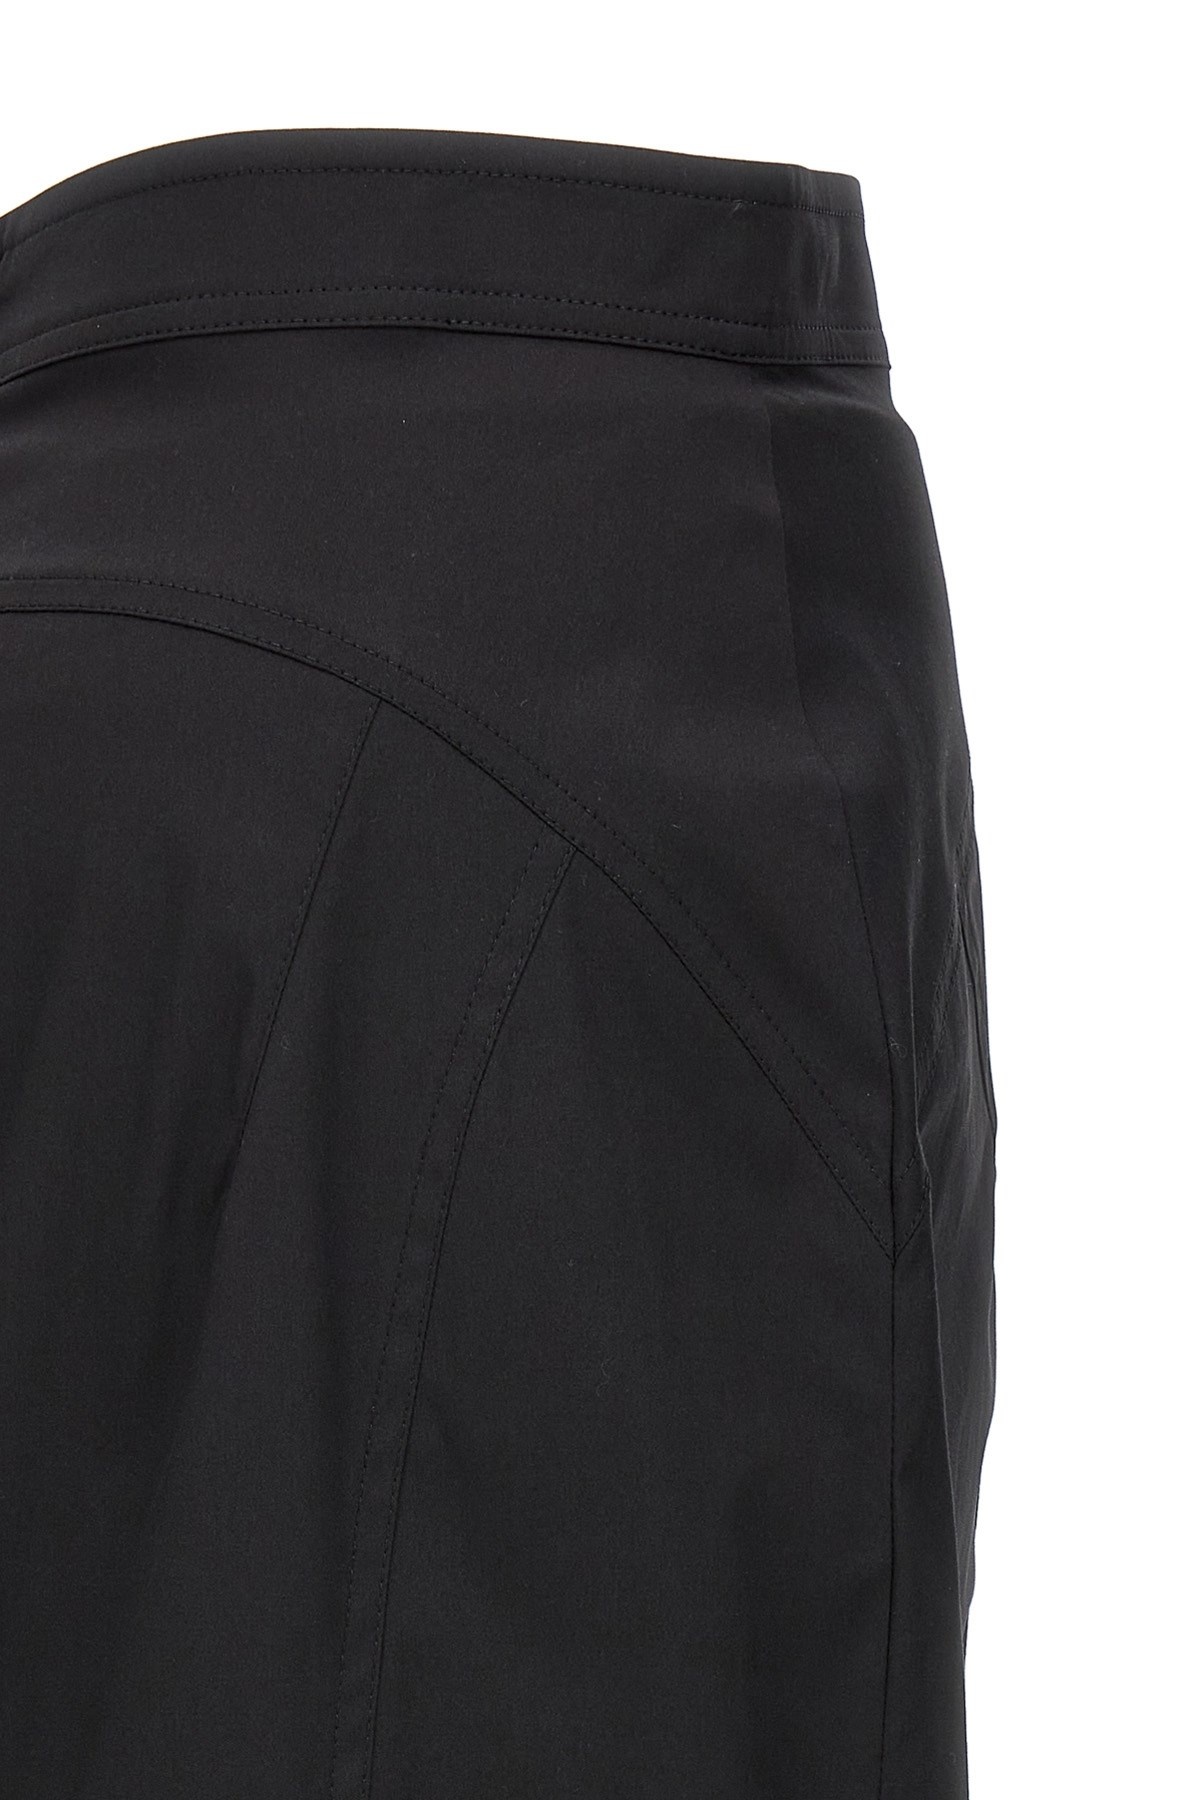 Longuette skirt - 4